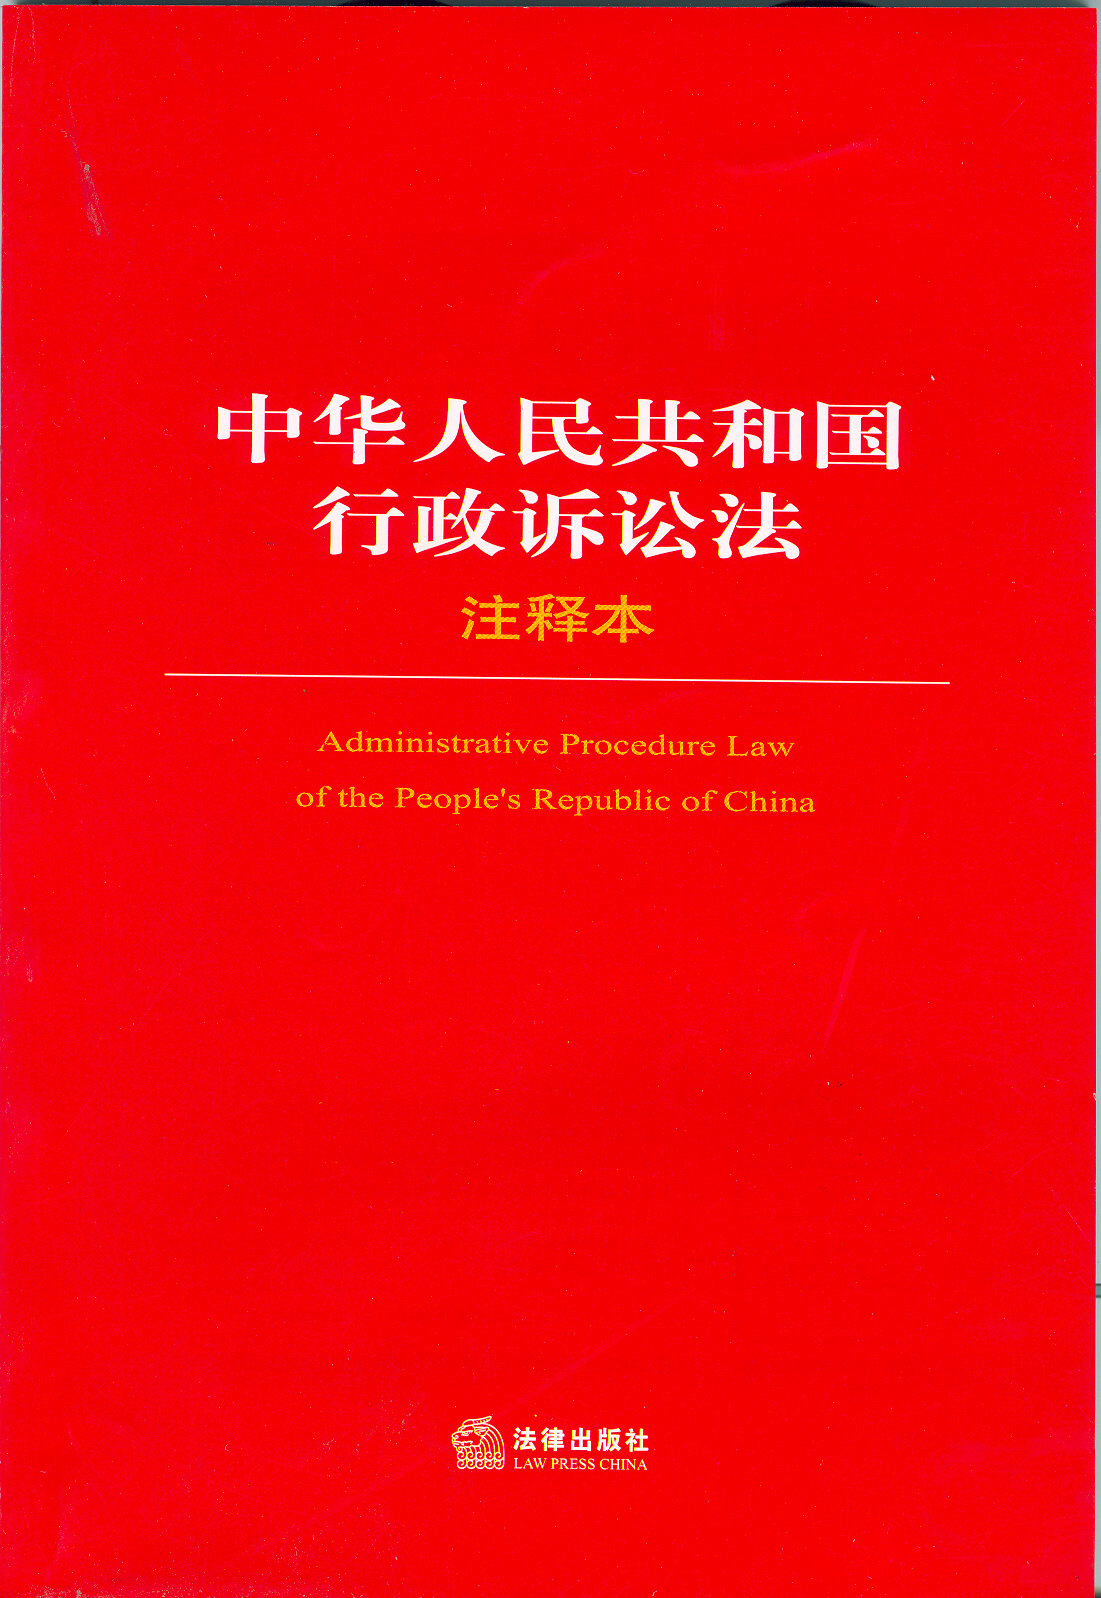 中国法律最重要的渊源是_劳动法基本原则的法律渊源是什么_行政法的基本渊源是